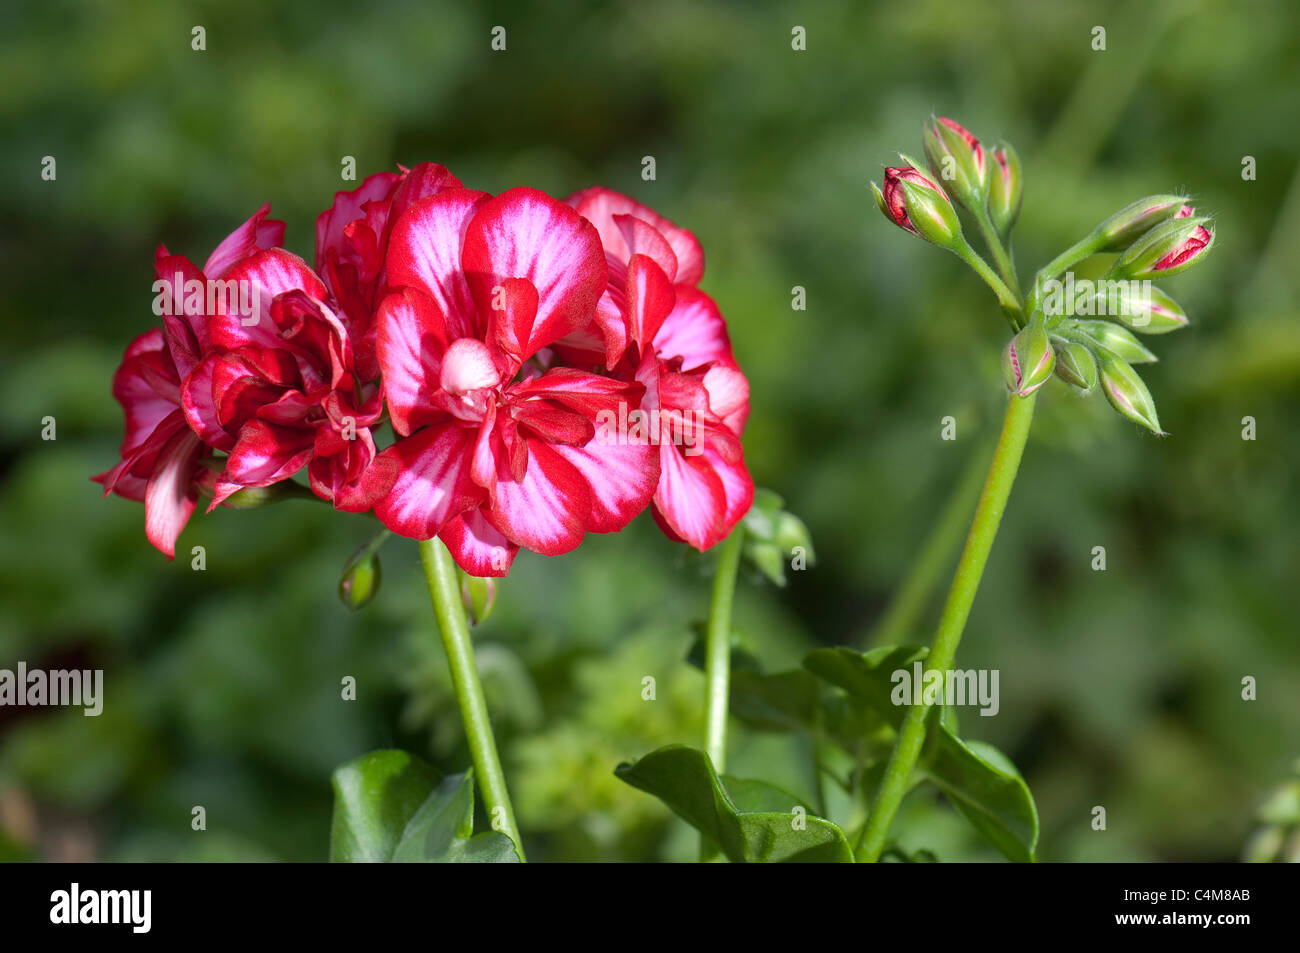 Geranium, Pelargonium (Pelargonium zonale Chris). Red flowering plant. Stock Photo